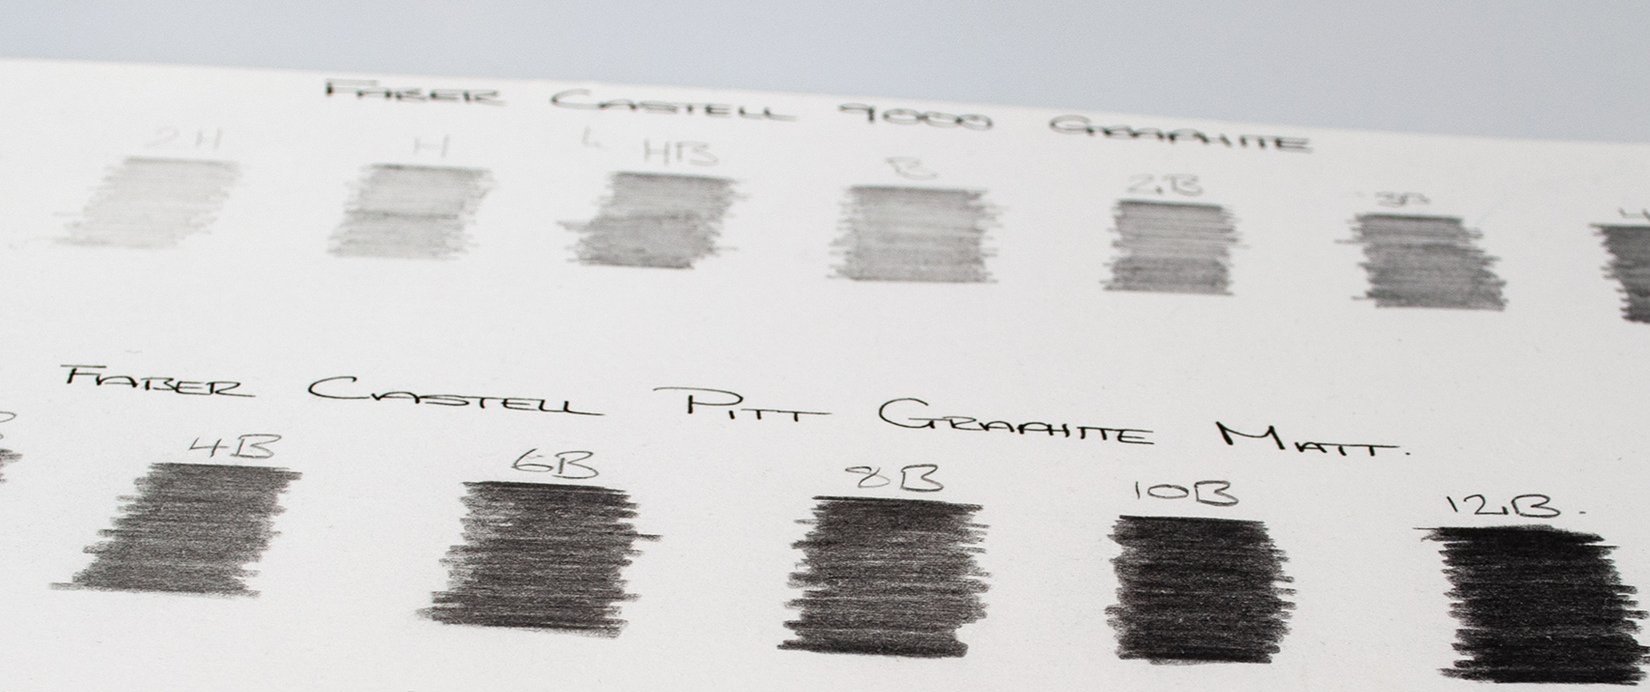 Faber-Castell Pitt Graphite Matt pencils